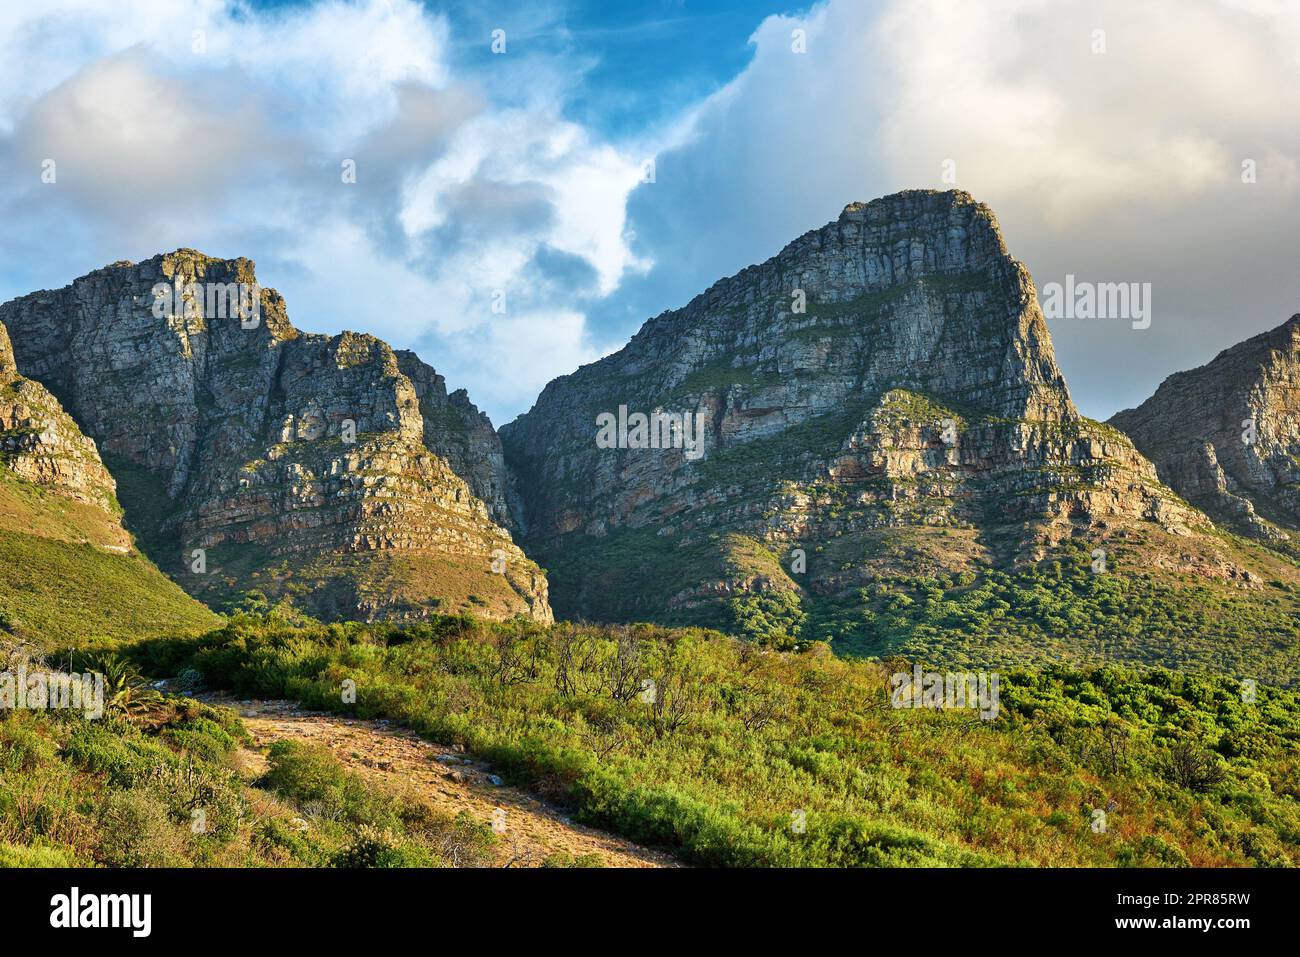 Paesaggio di una montagna a città del Capo, in Sud Africa durante il giorno. Cima rocciosa con vegetazione contro il cielo nuvoloso. Sotto la popolare attrazione turistica e il sentiero escursionistico avventuroso vicino alla Table Mountain Foto Stock